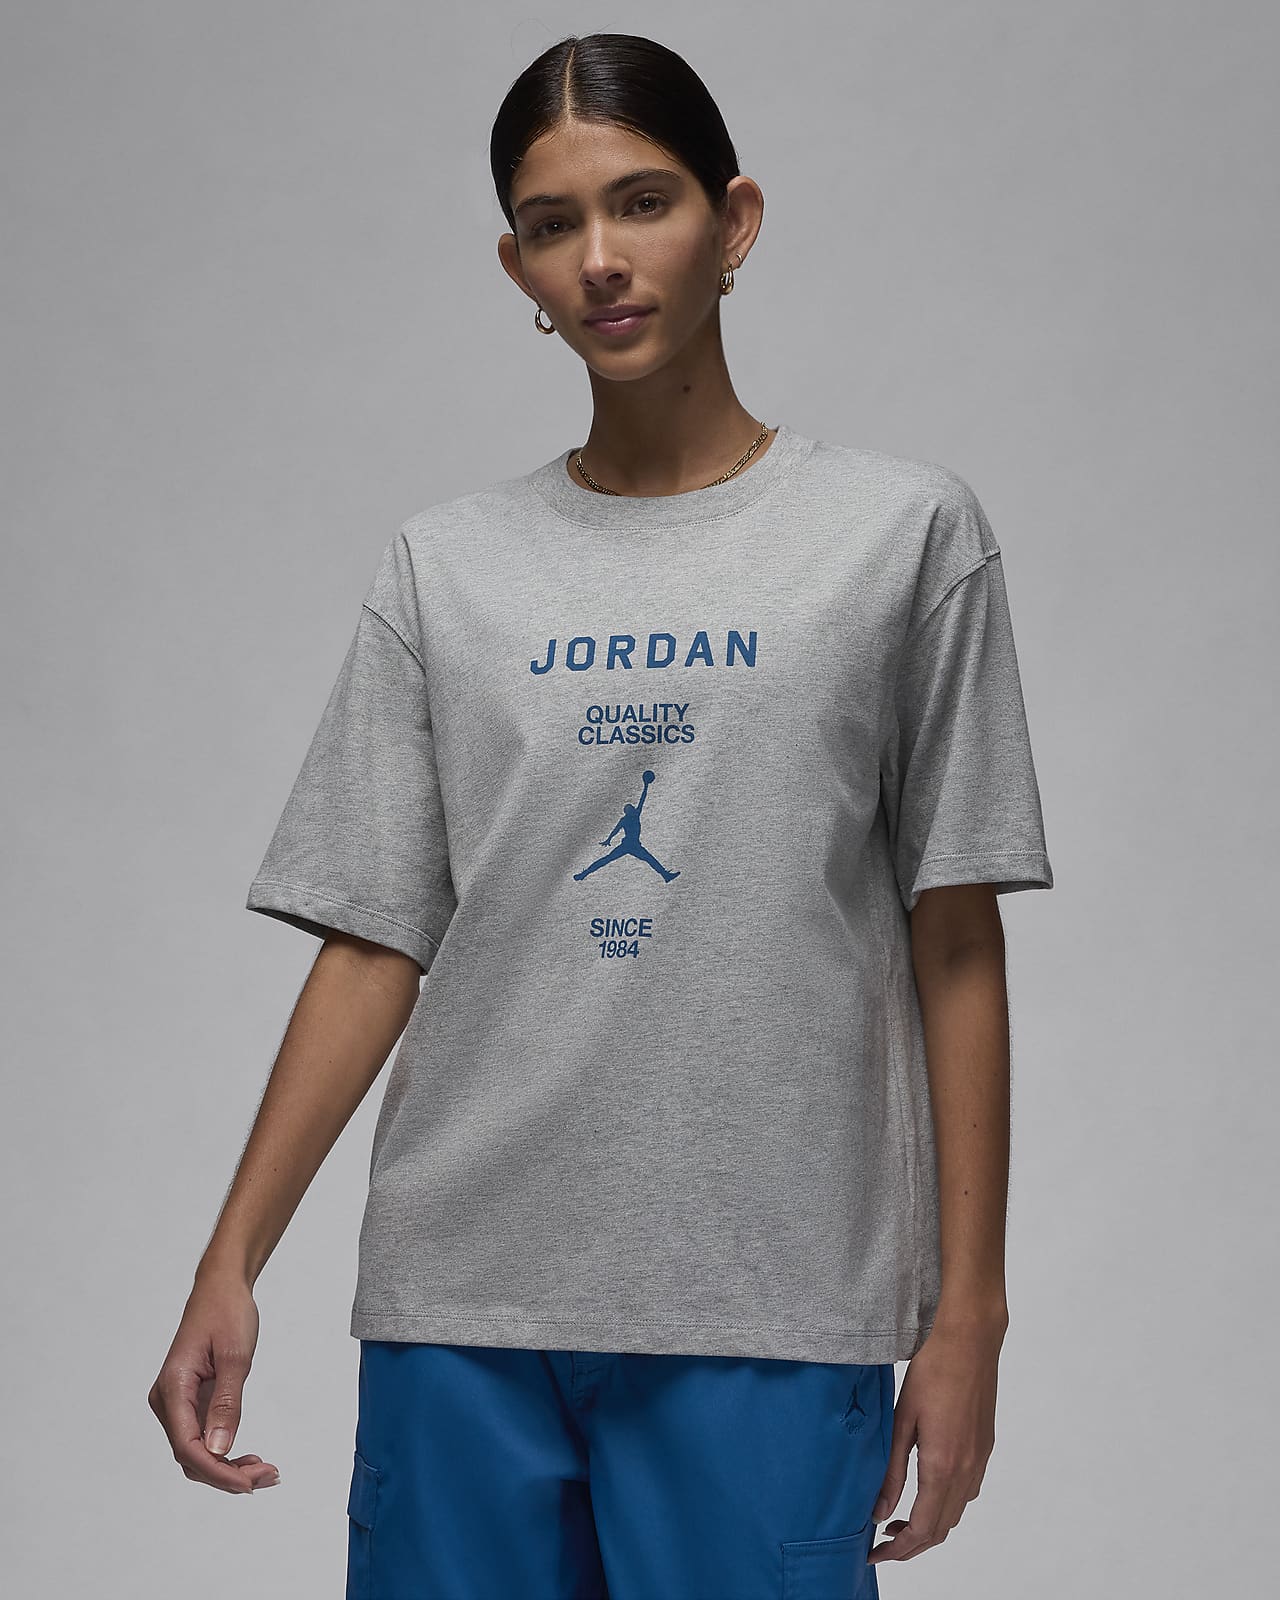 T-shirt estilo Girlfriend Jordan para mulher